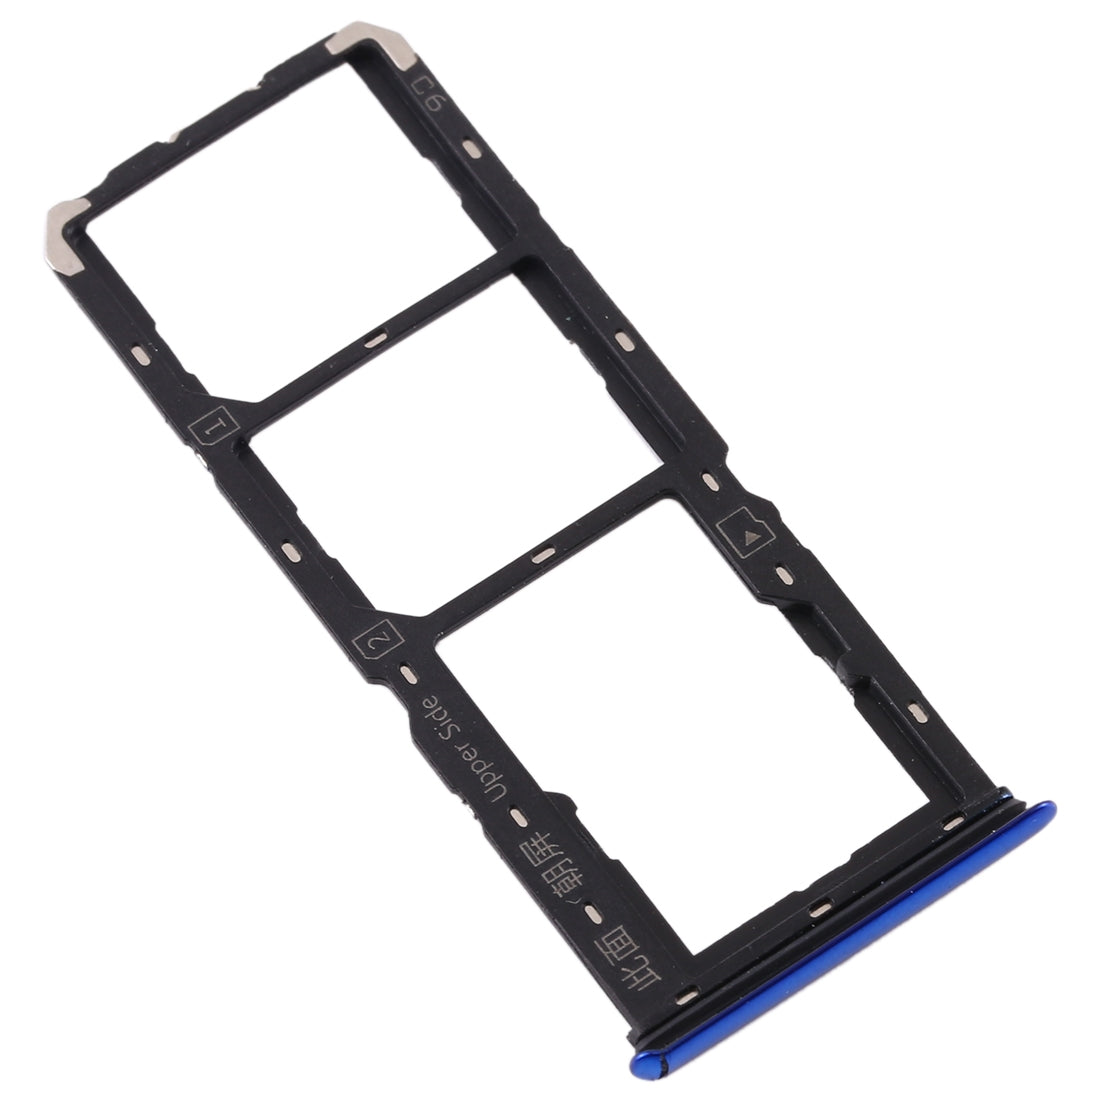 Vivo S1 Blue SIM / Micro SD Holder Tray